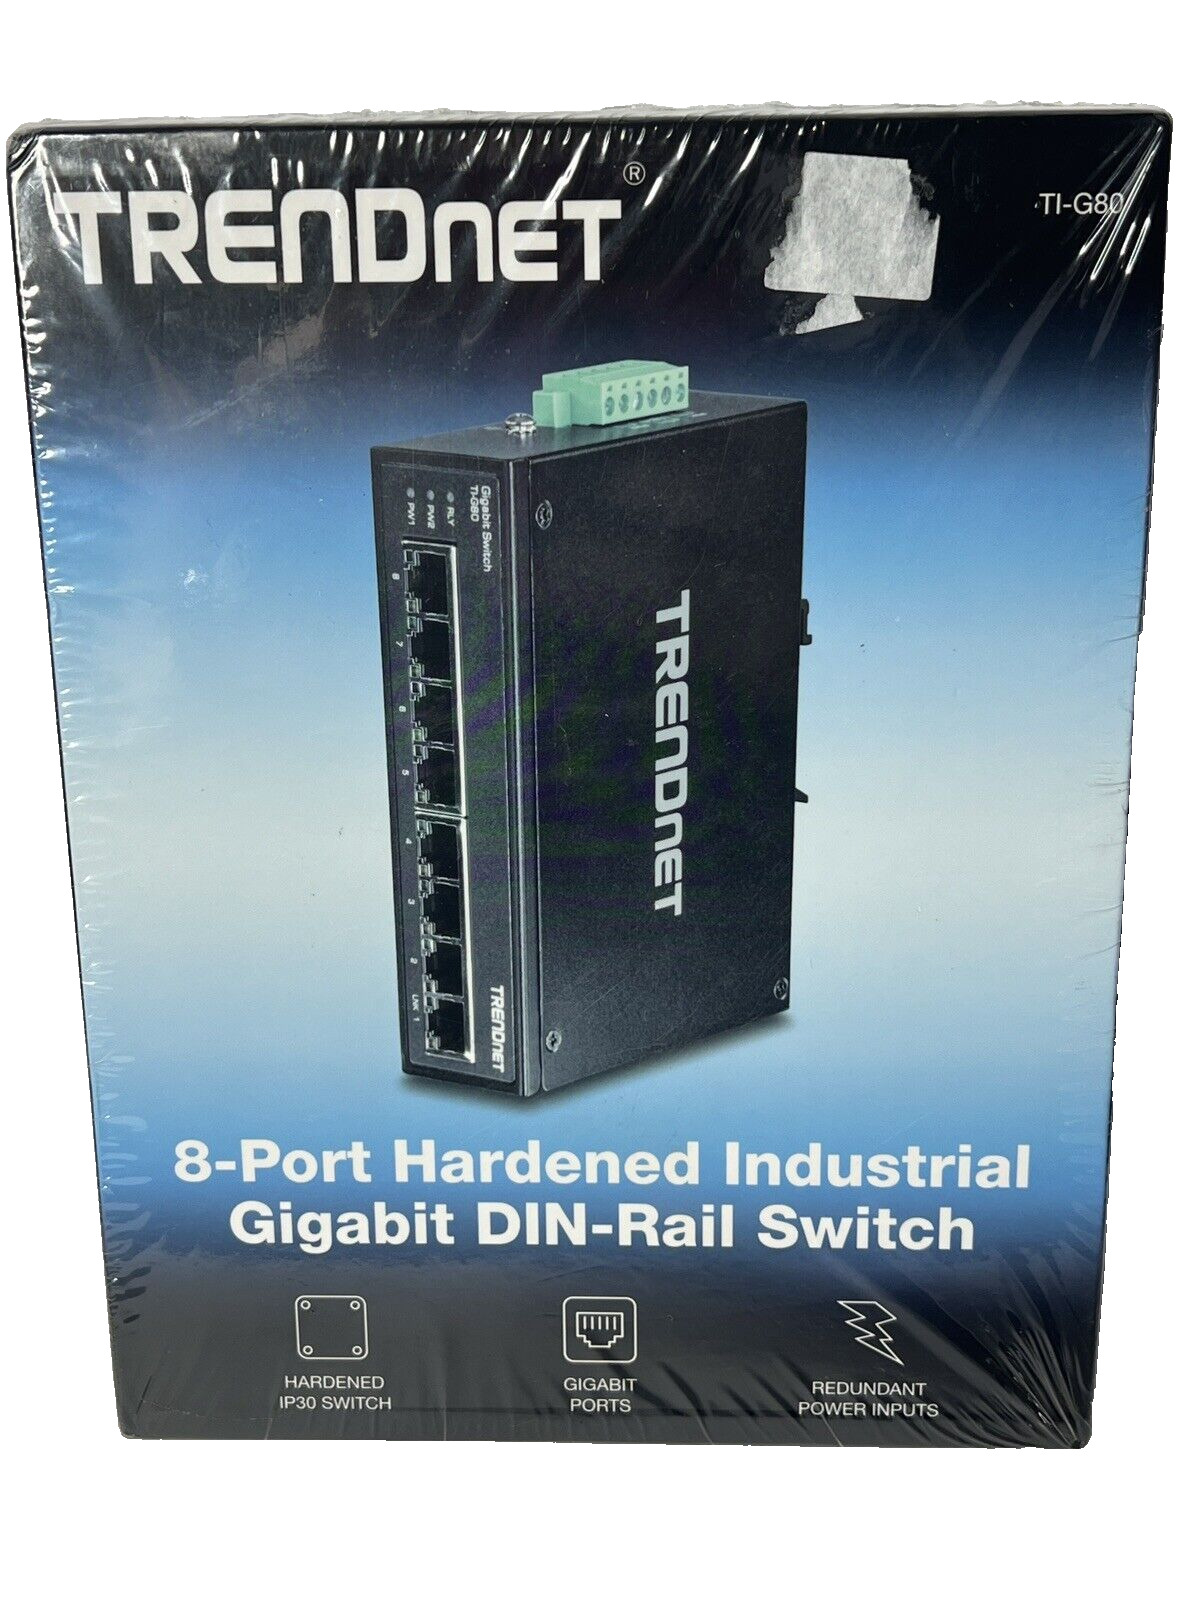 TRENDnet TI-G80 8-port hardened Industrial Gigabit Switch DIN-Rail New Sealed